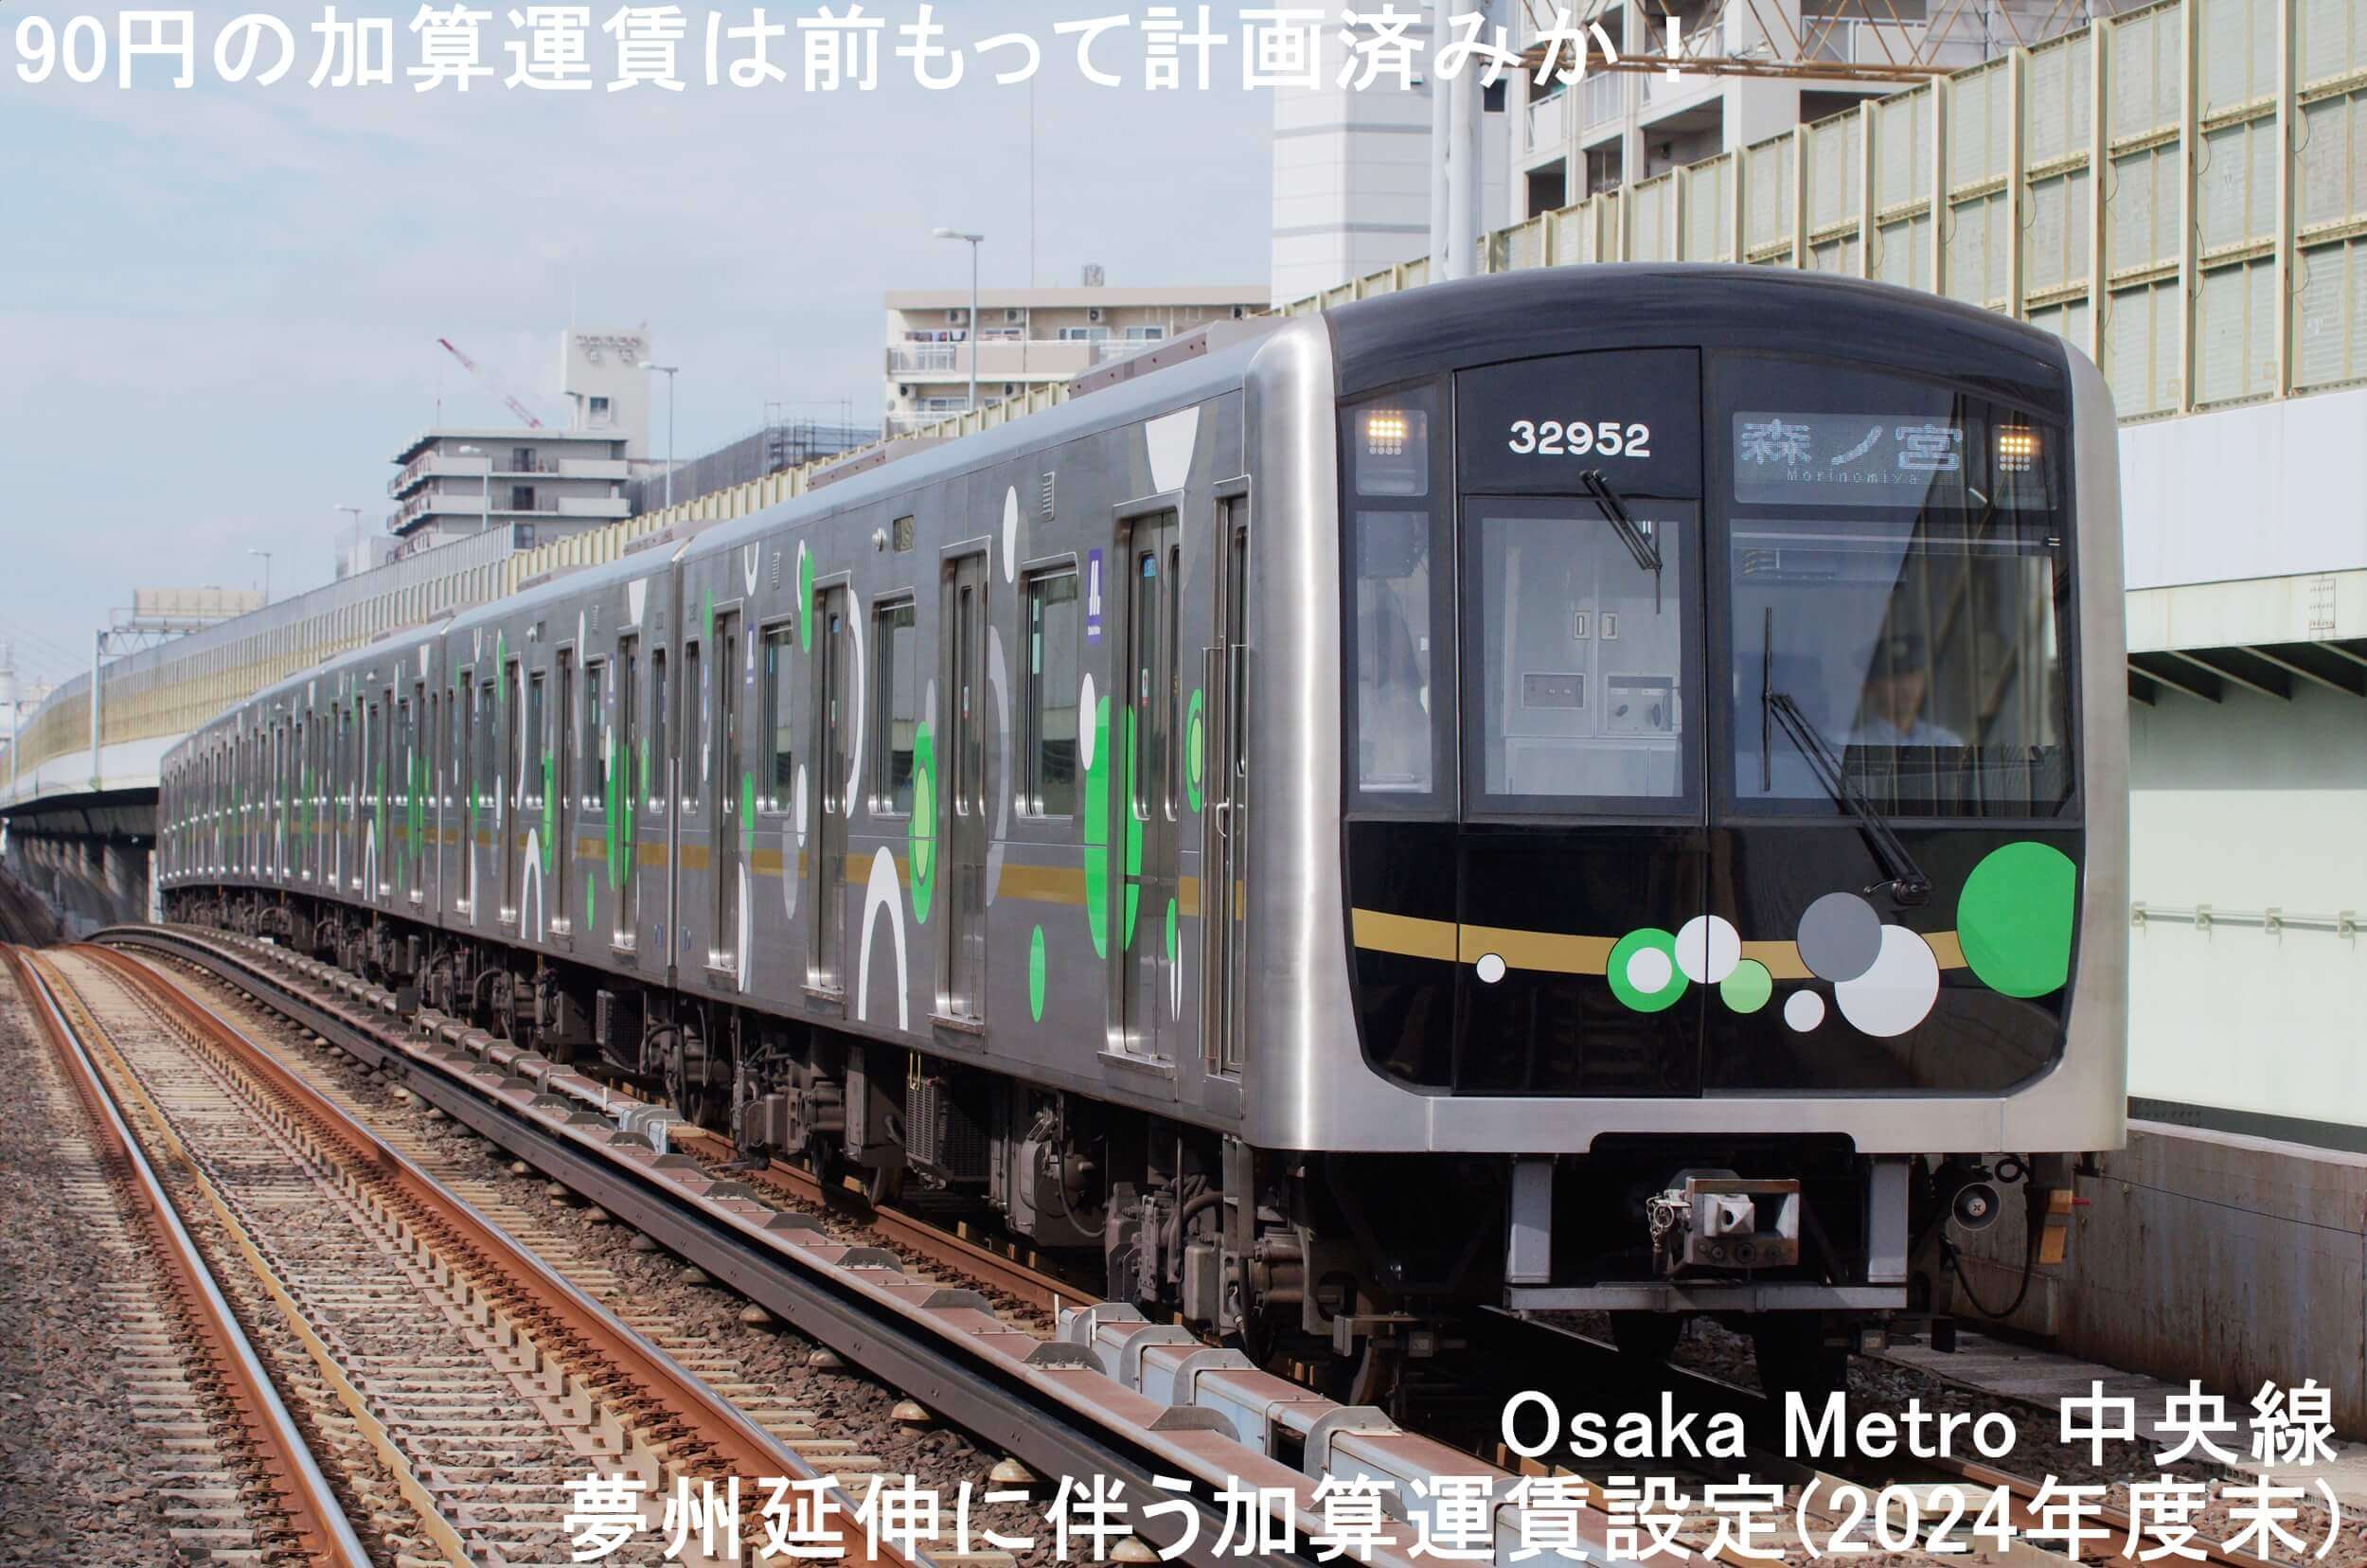 大阪万博2025関連事業で法令違反の疑い！　Osaka Metro 中央線夢州延伸に伴う加算運賃90円設定(2024年度末)